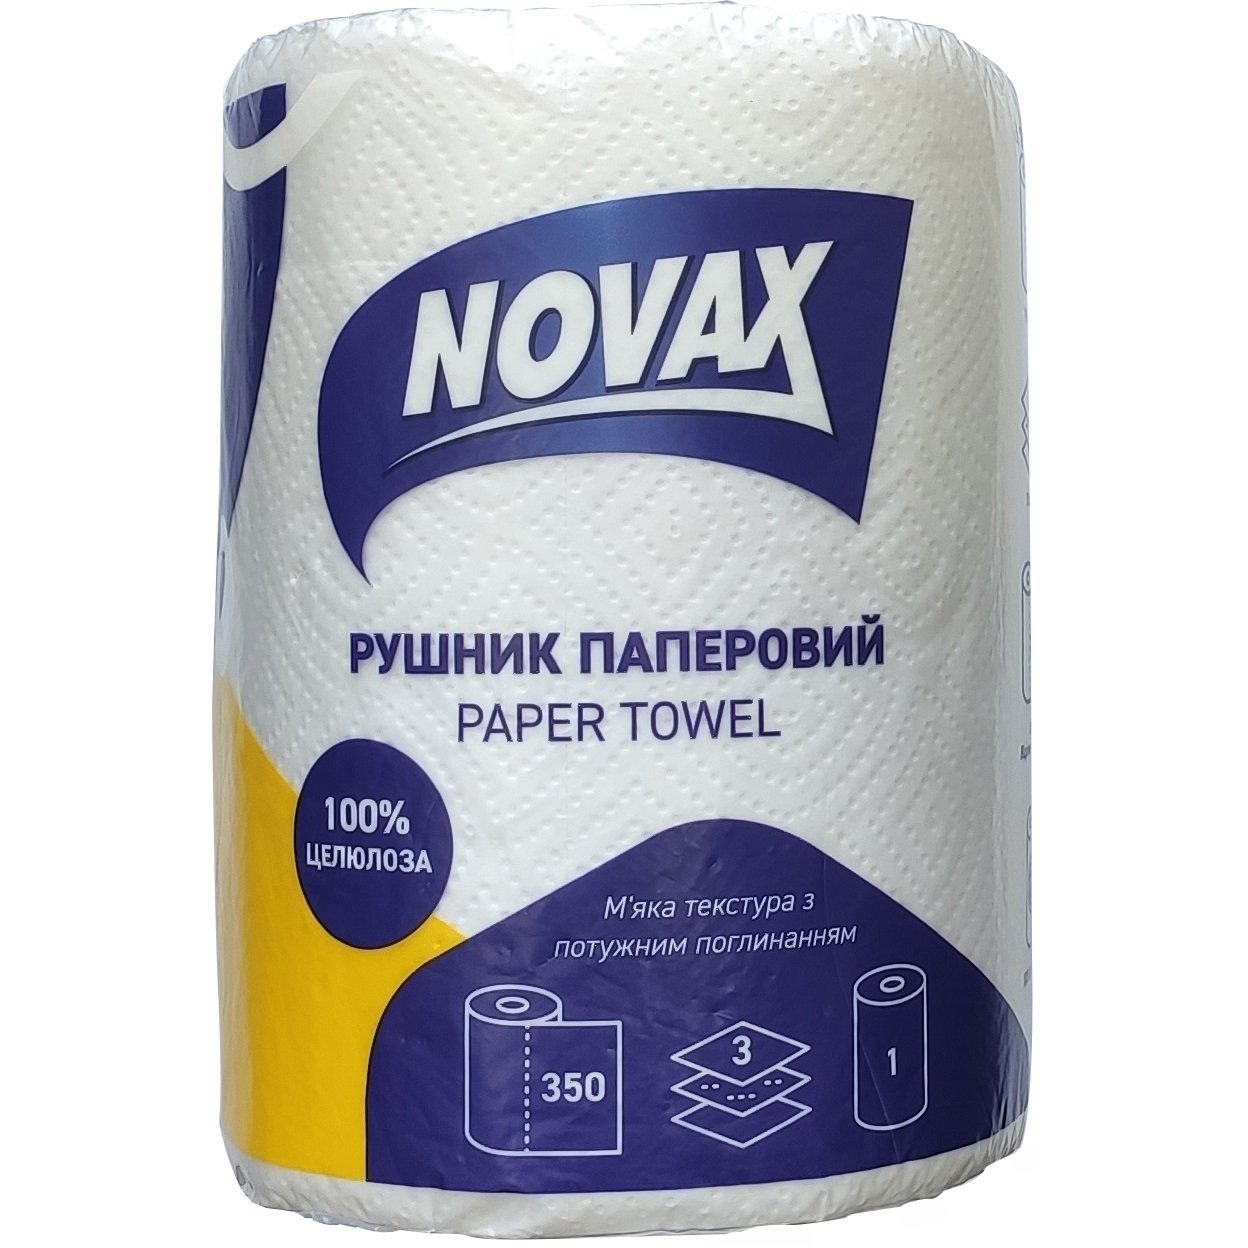 Бумажное полотенце Novax Джамбо, трехслойное, 350 листов, 1 рулон - фото 1